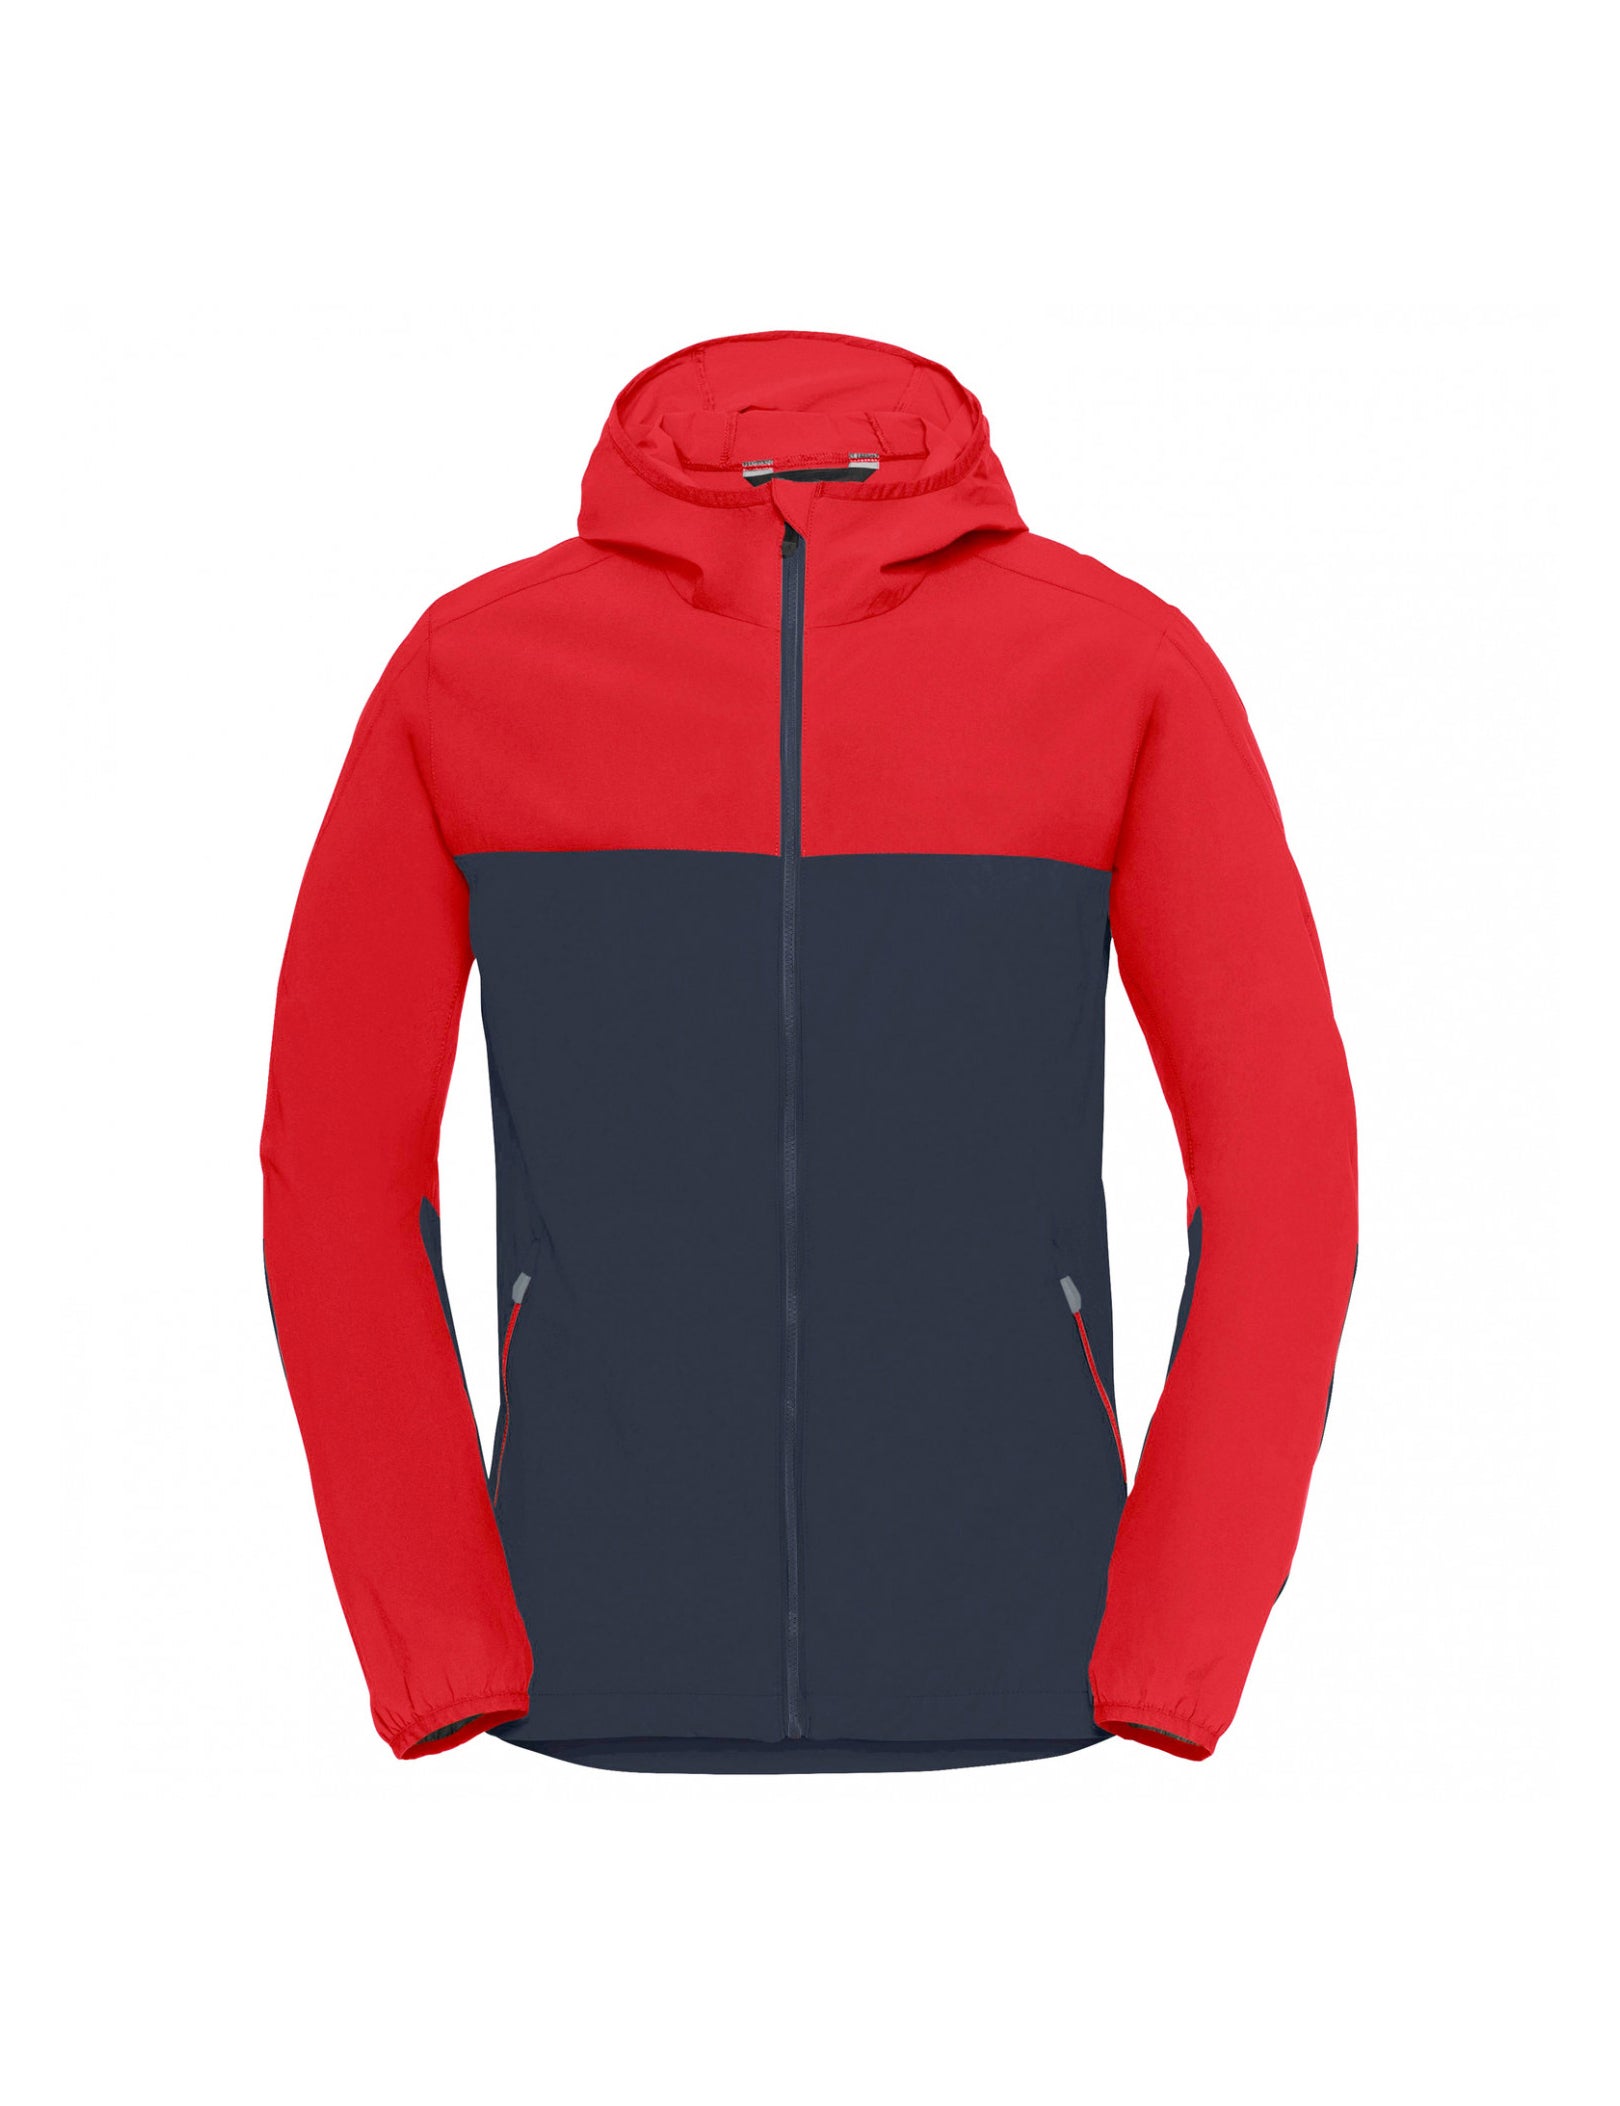 Reliable Supplier Outdoor Wear – Hiking Jacket Waterproof venedor-regal-blue-outdoor